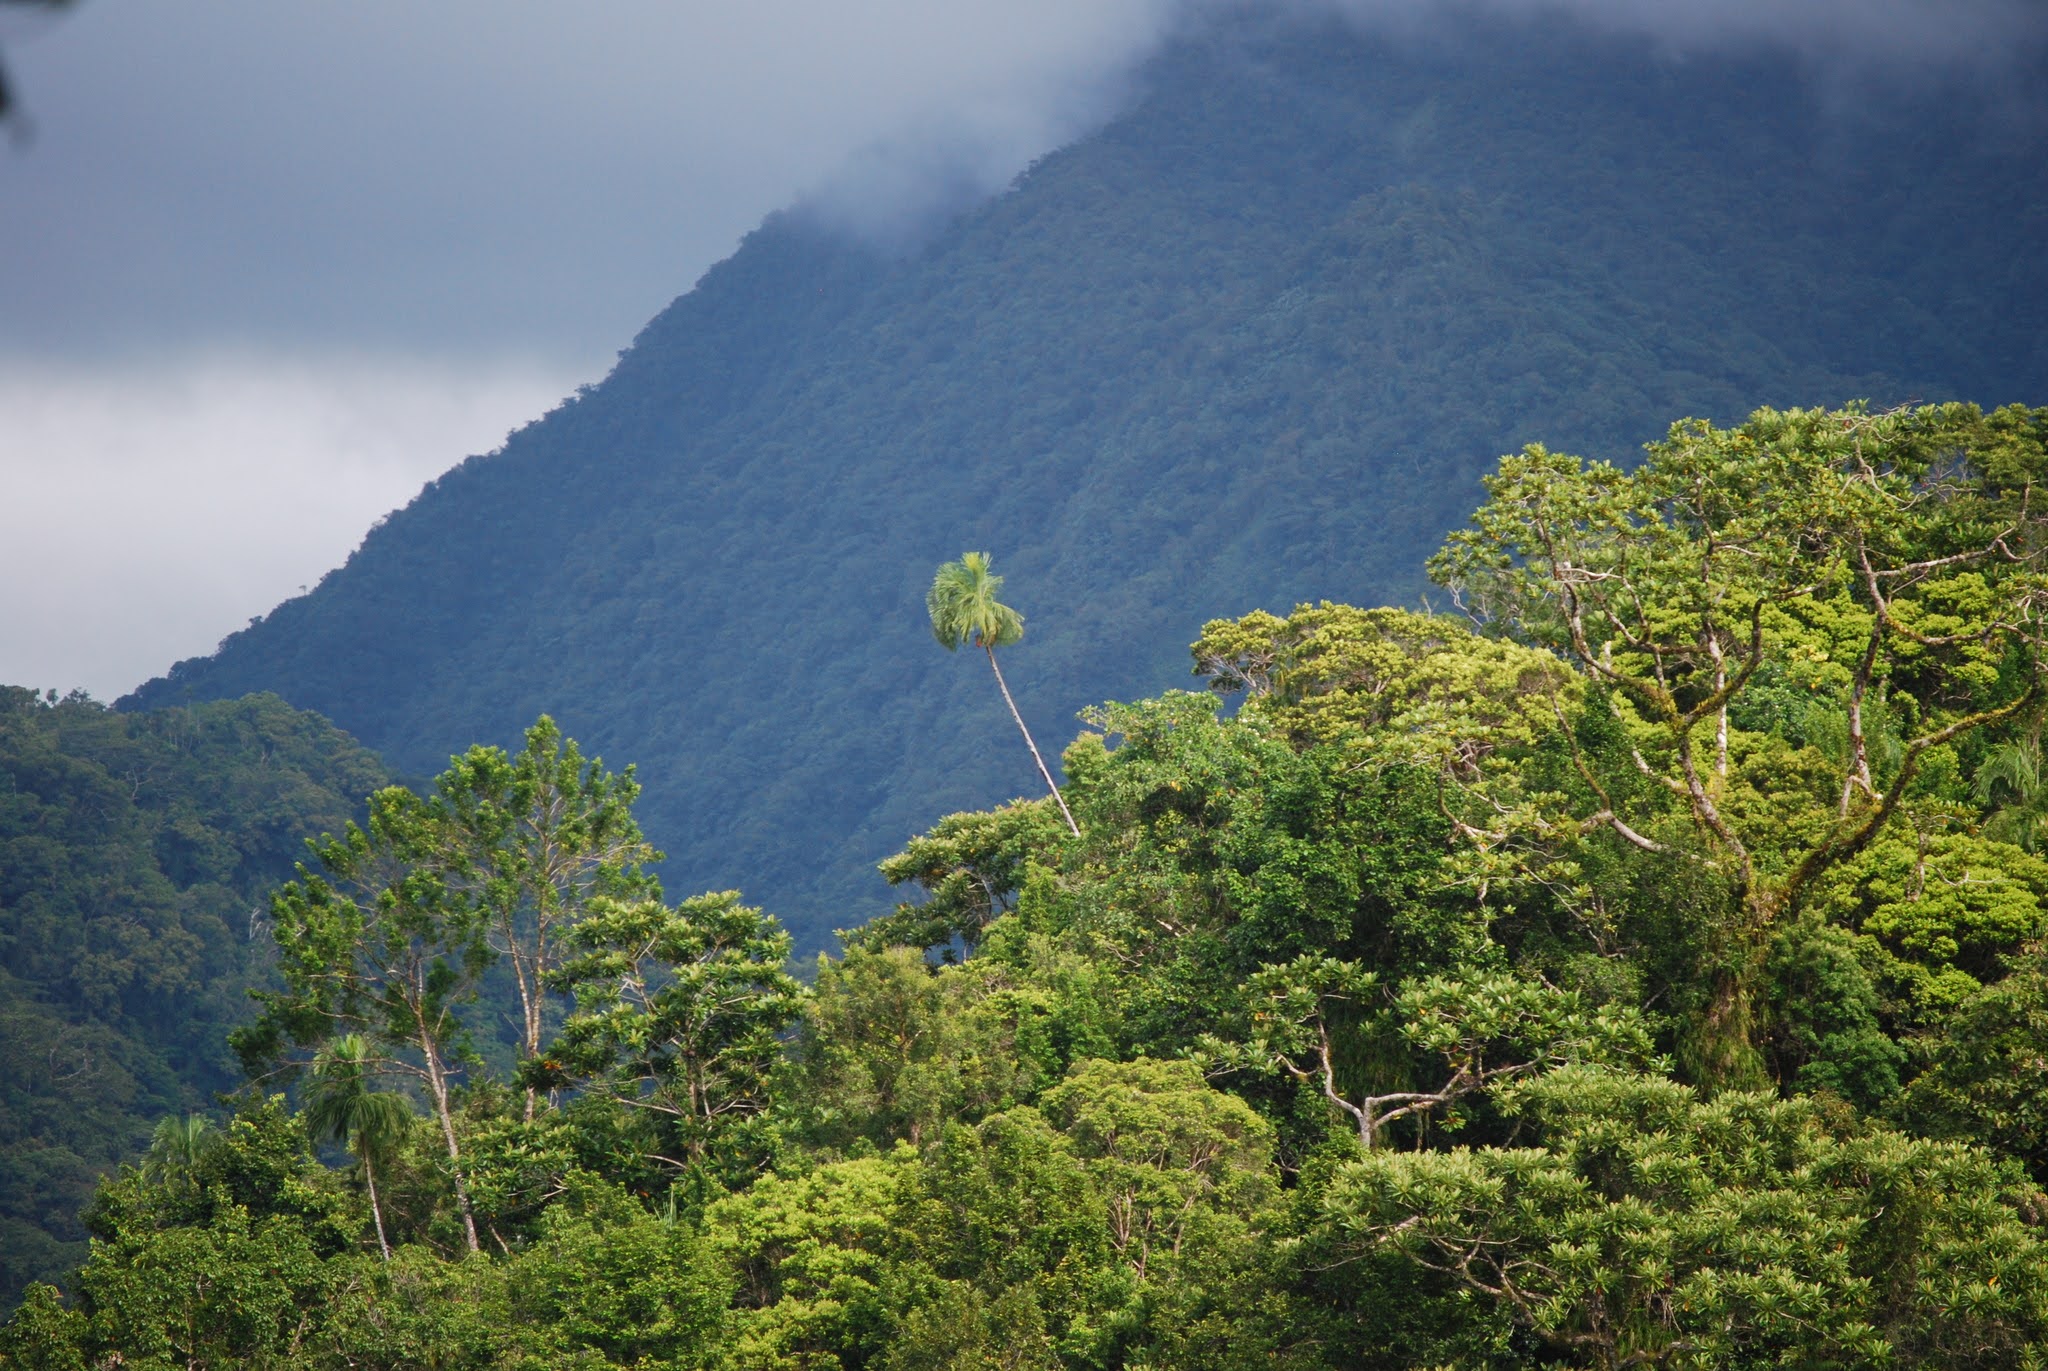 The slopes of the Kolombangara rainforest